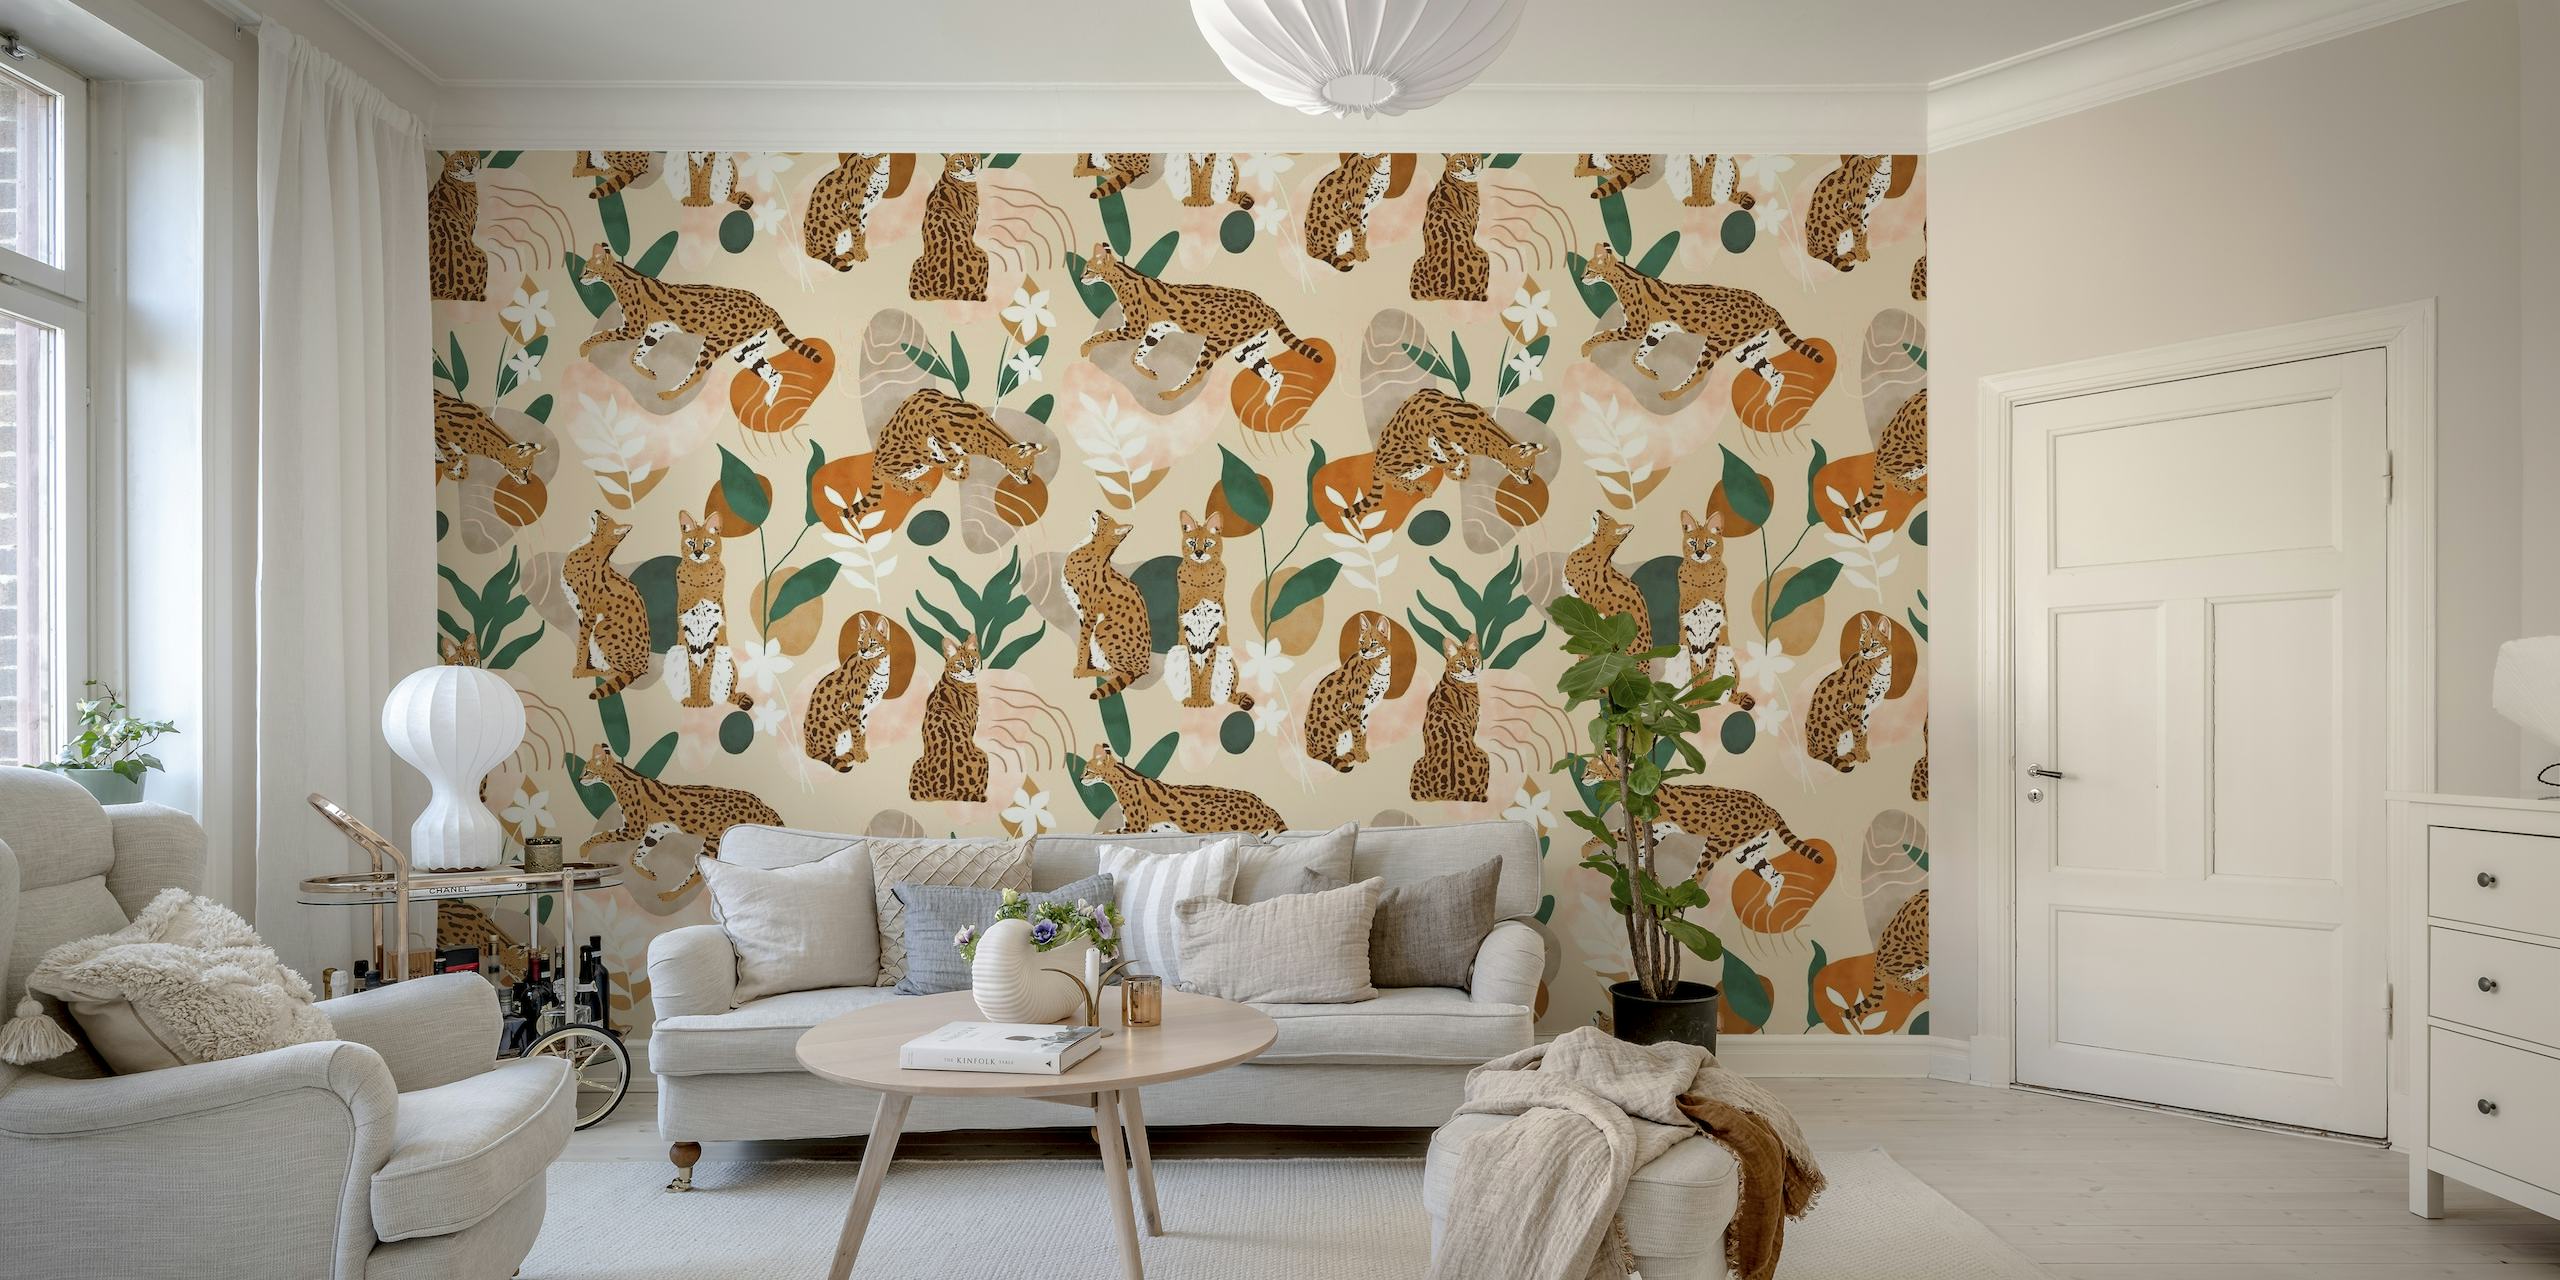 Mačka Serval apstraktna zidna slika sa stiliziranim mačjim i biljnim motivima na neutralnoj pozadini.